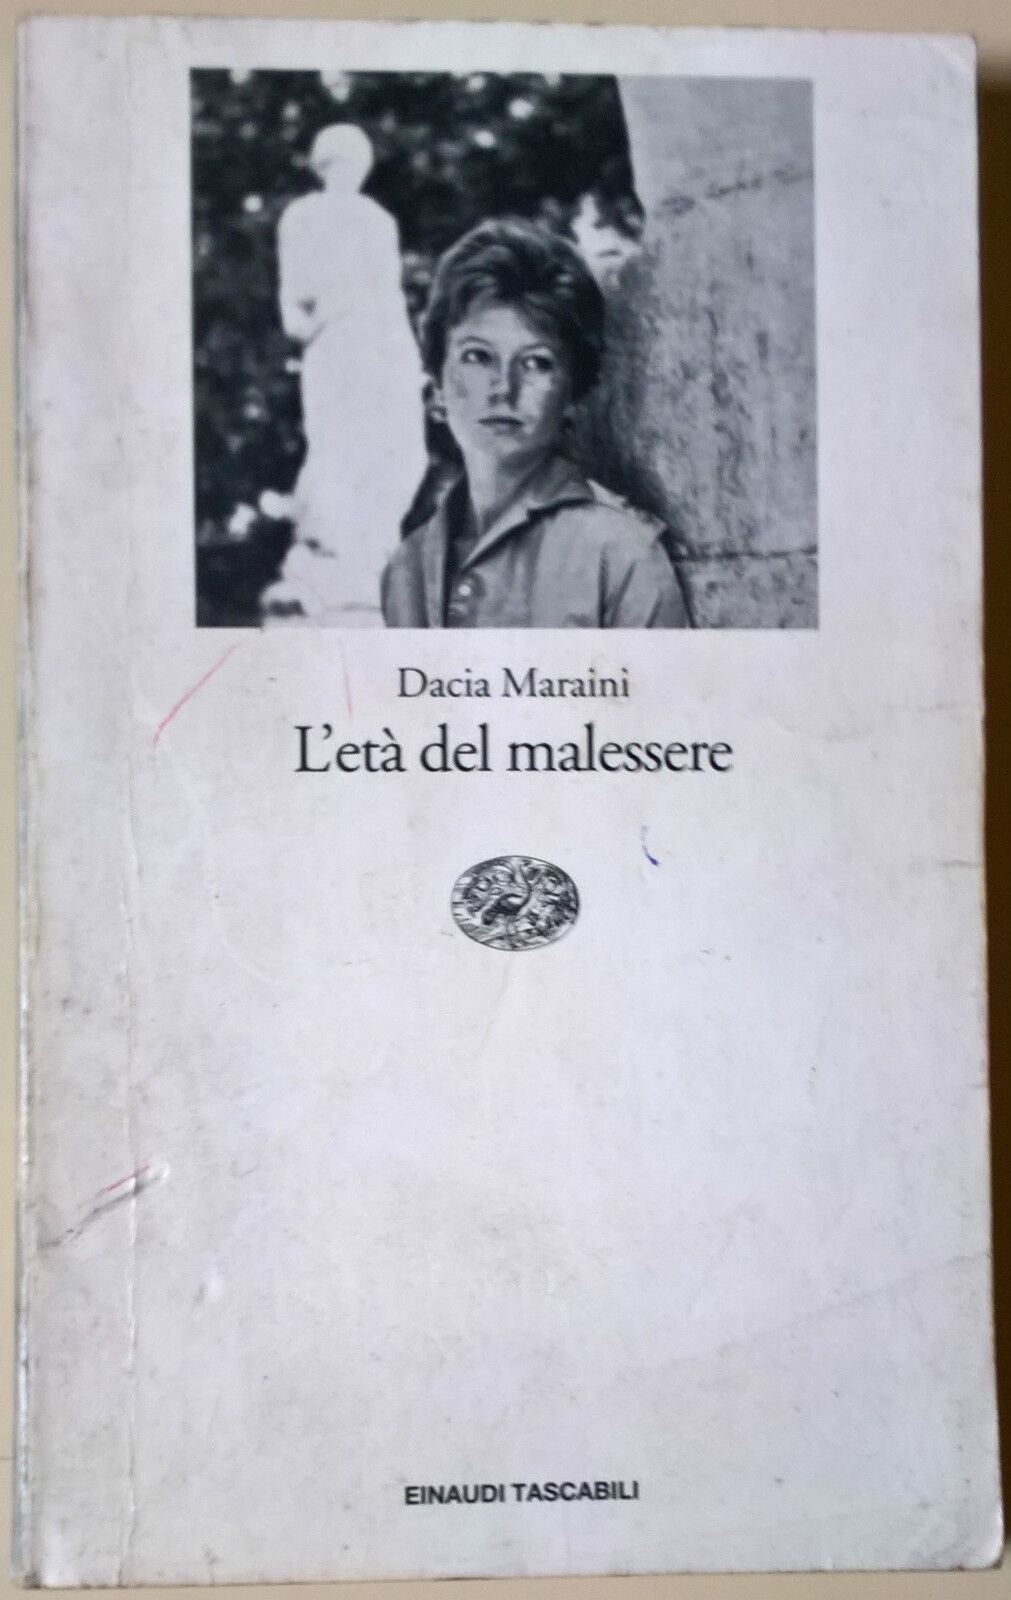  L'et? del malessere - Dacia Maraini - 1996, Einaudi - L